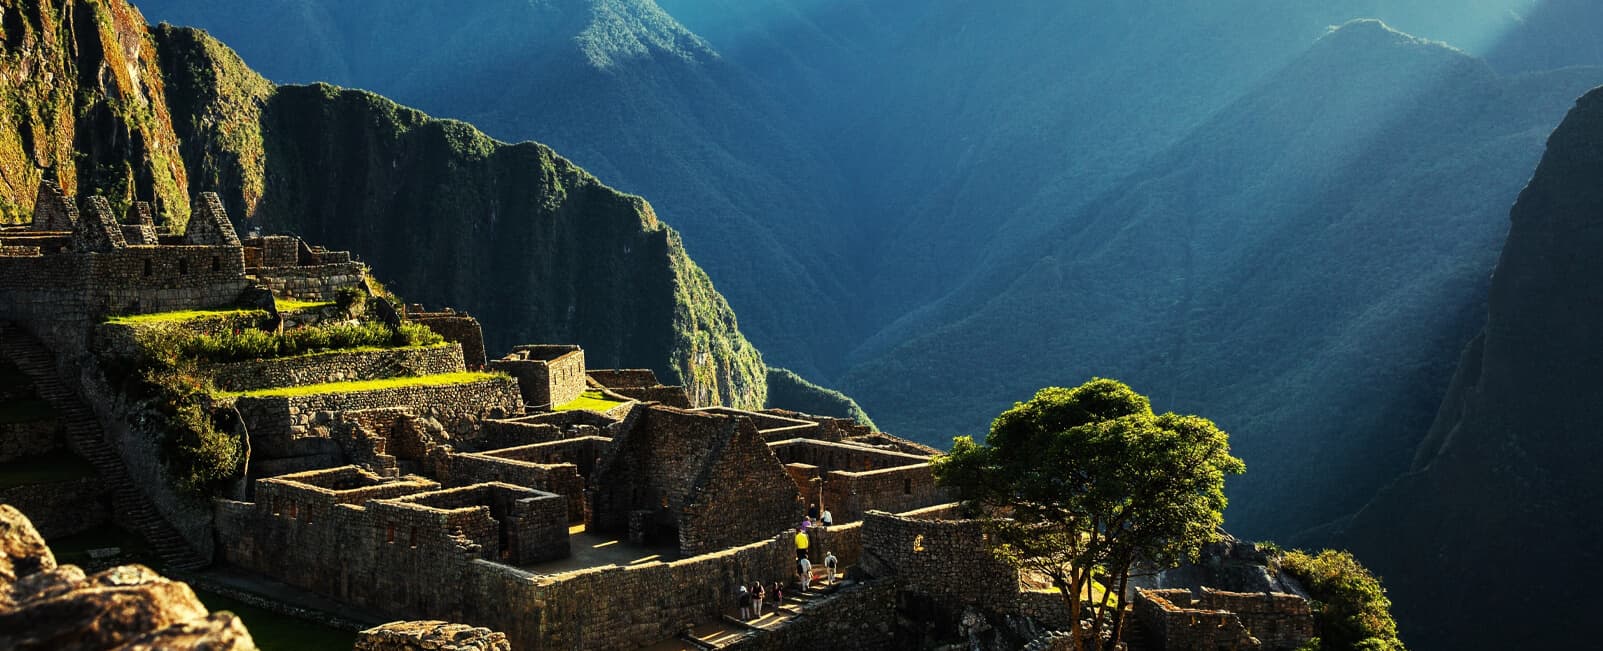 Peru Machu Picchu Ancient Ruins